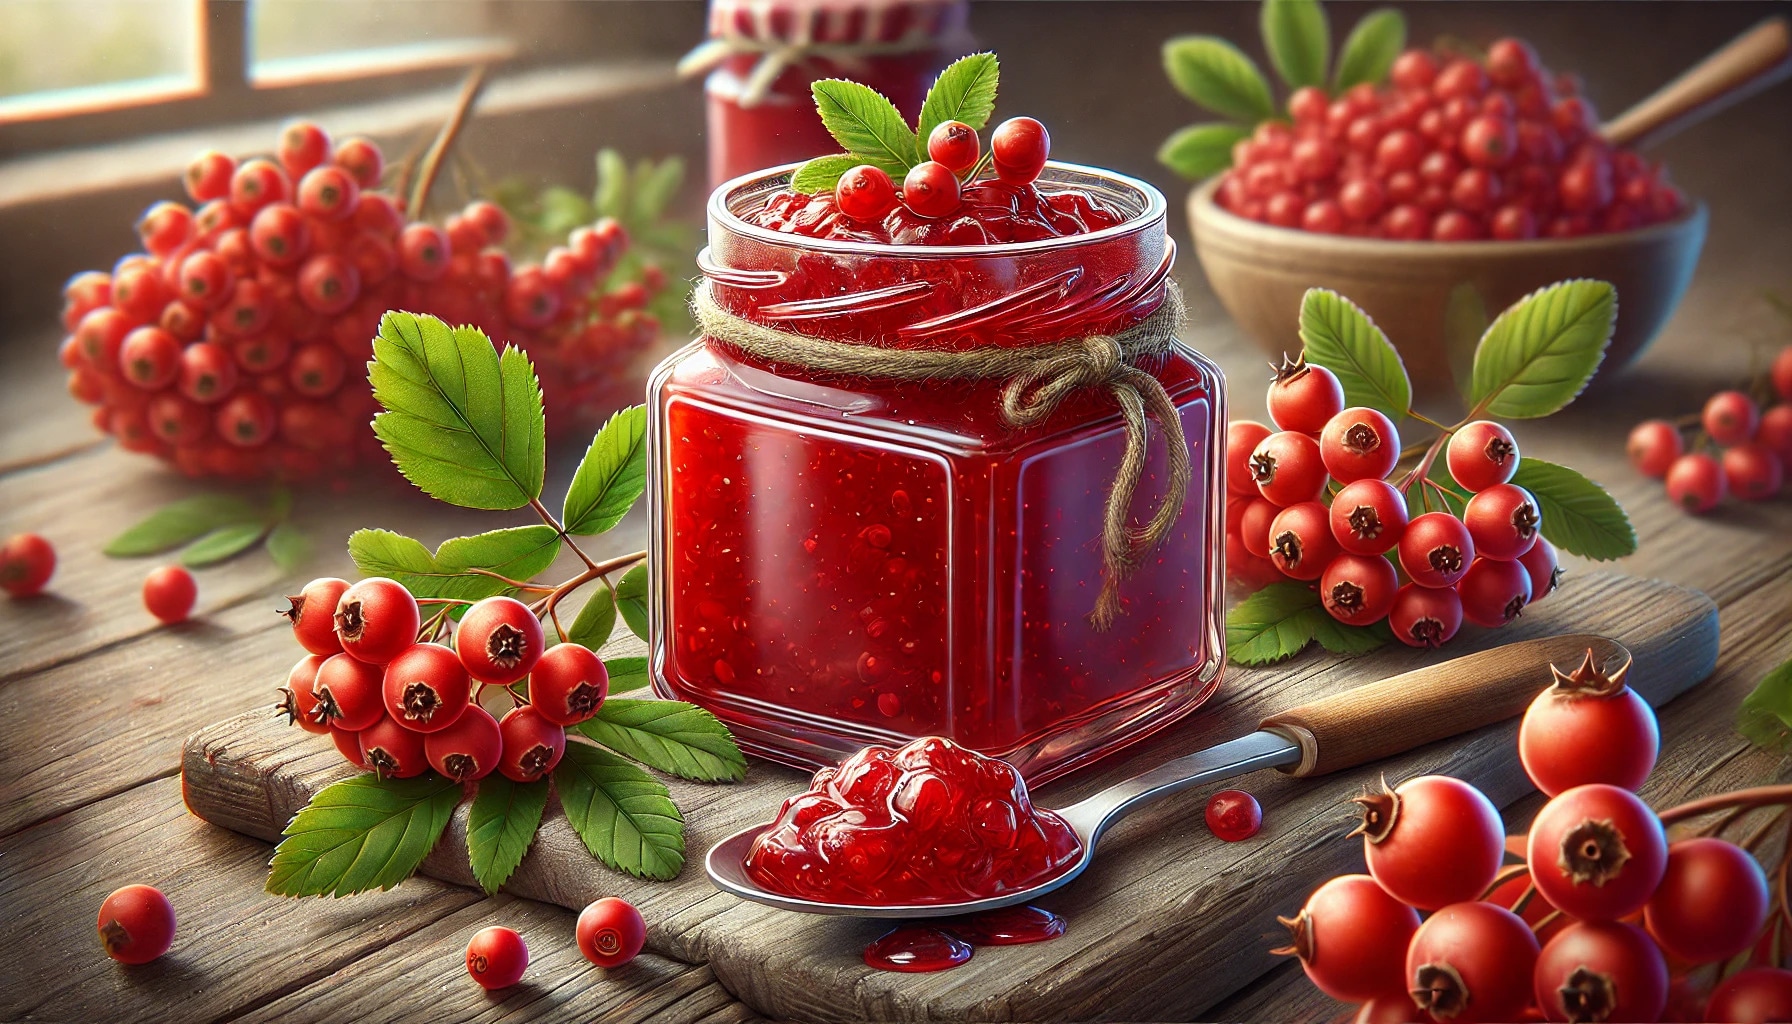 Рябиновая сладость: как приготовить вкусное и полезное варенье из ягод рябины — подробный рецепт лакомства с пошаговым описанием